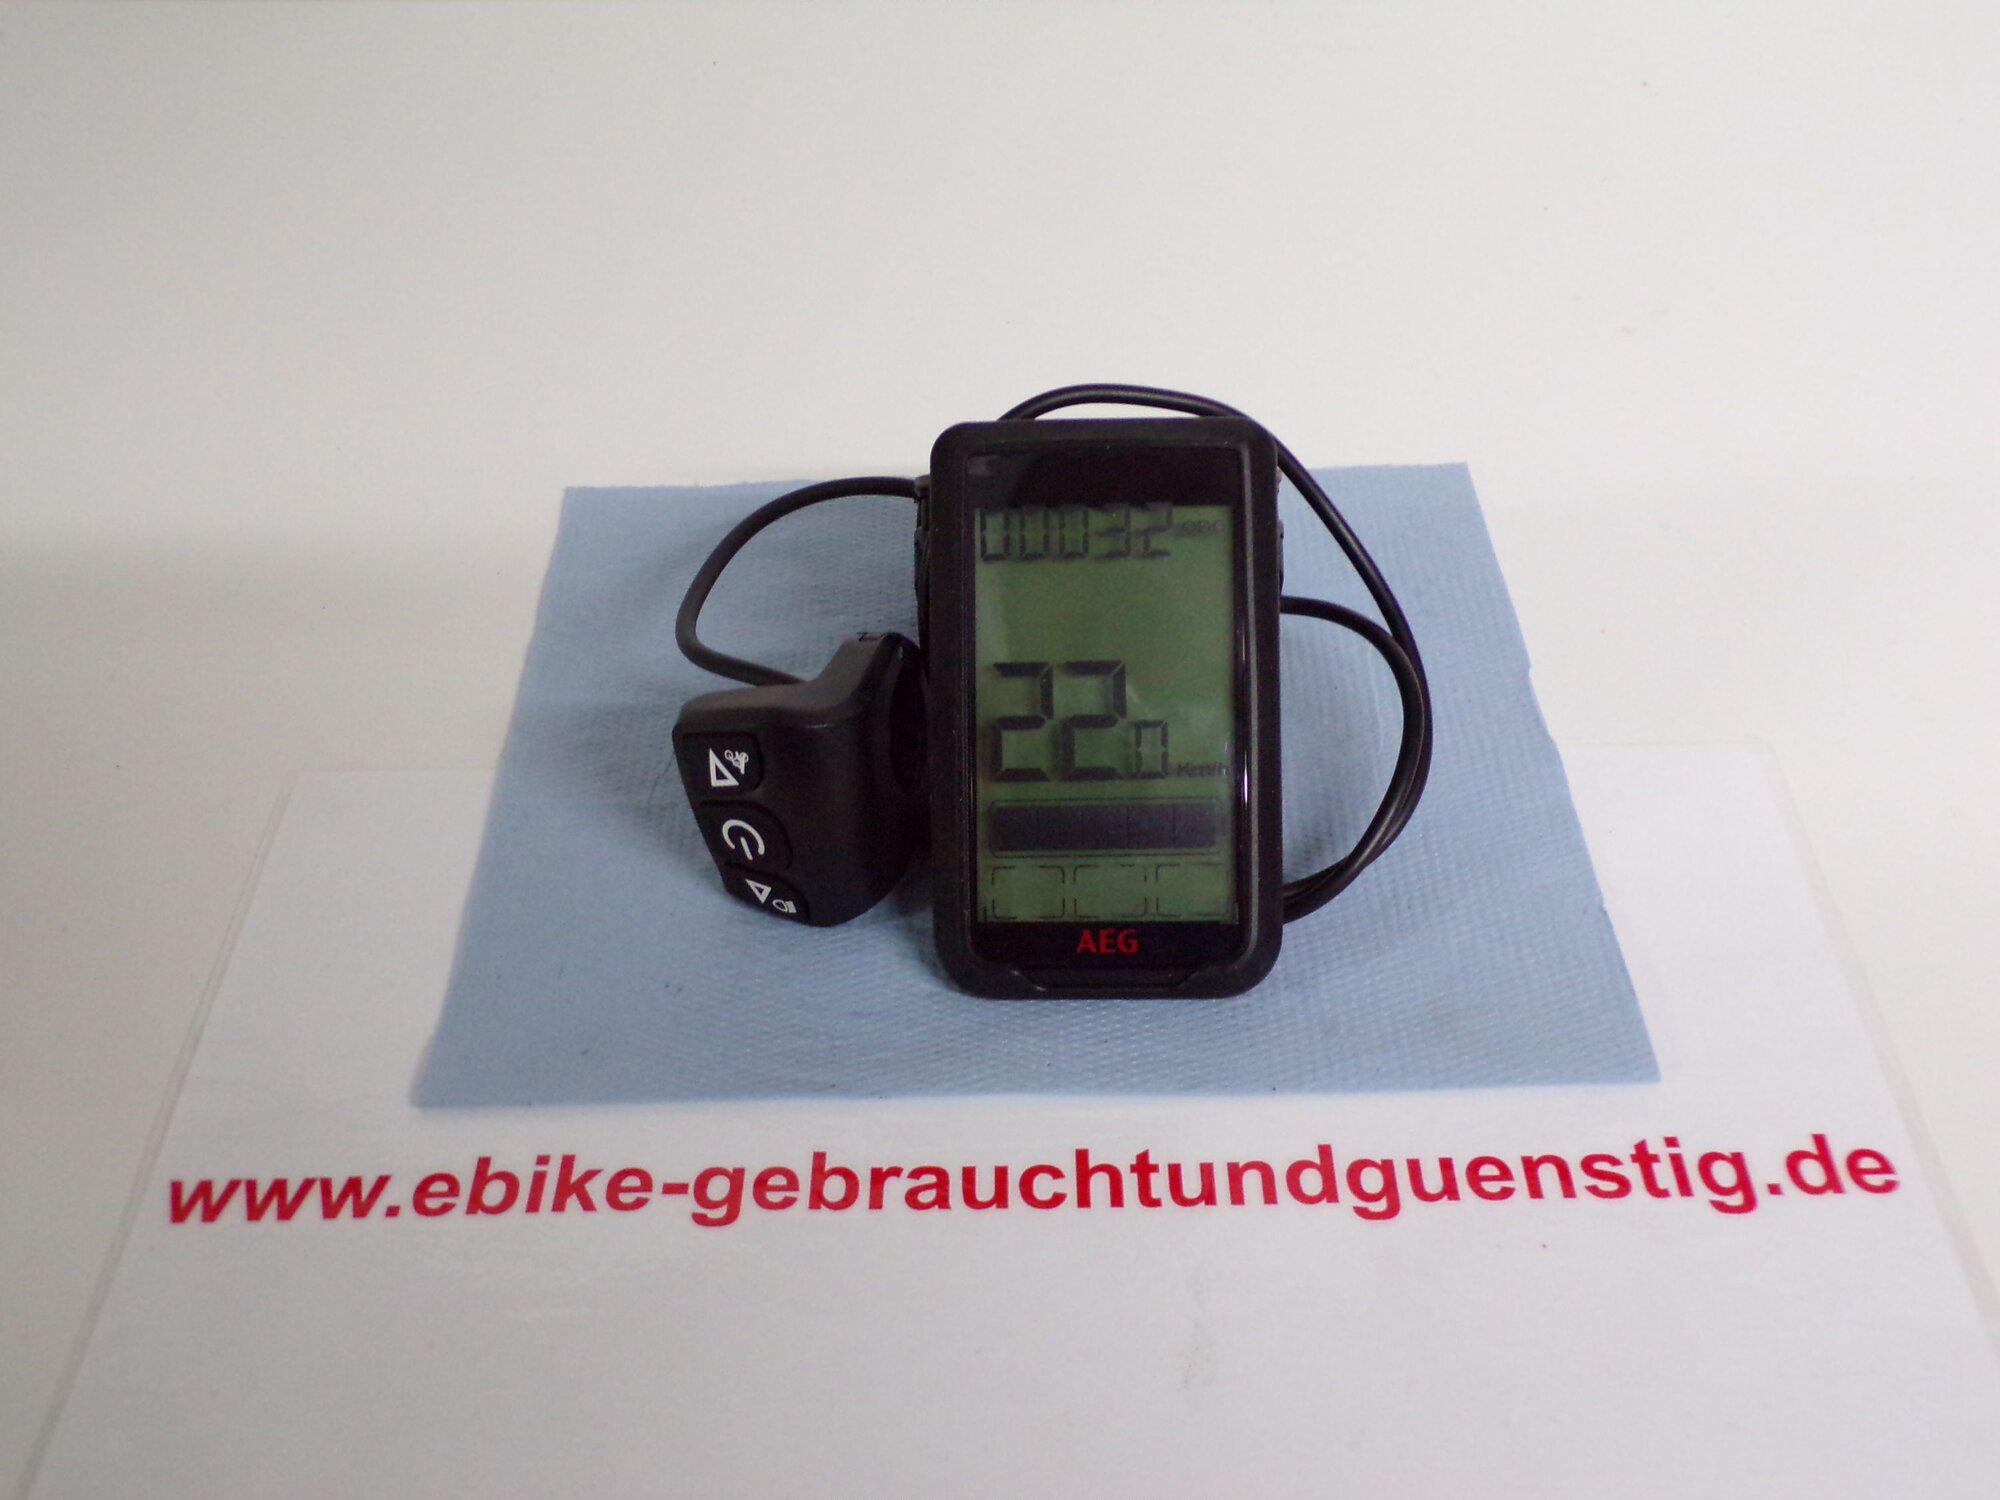 Sonderposten und E-Bike Service, Kleine Gasse 9 in Staufenberg